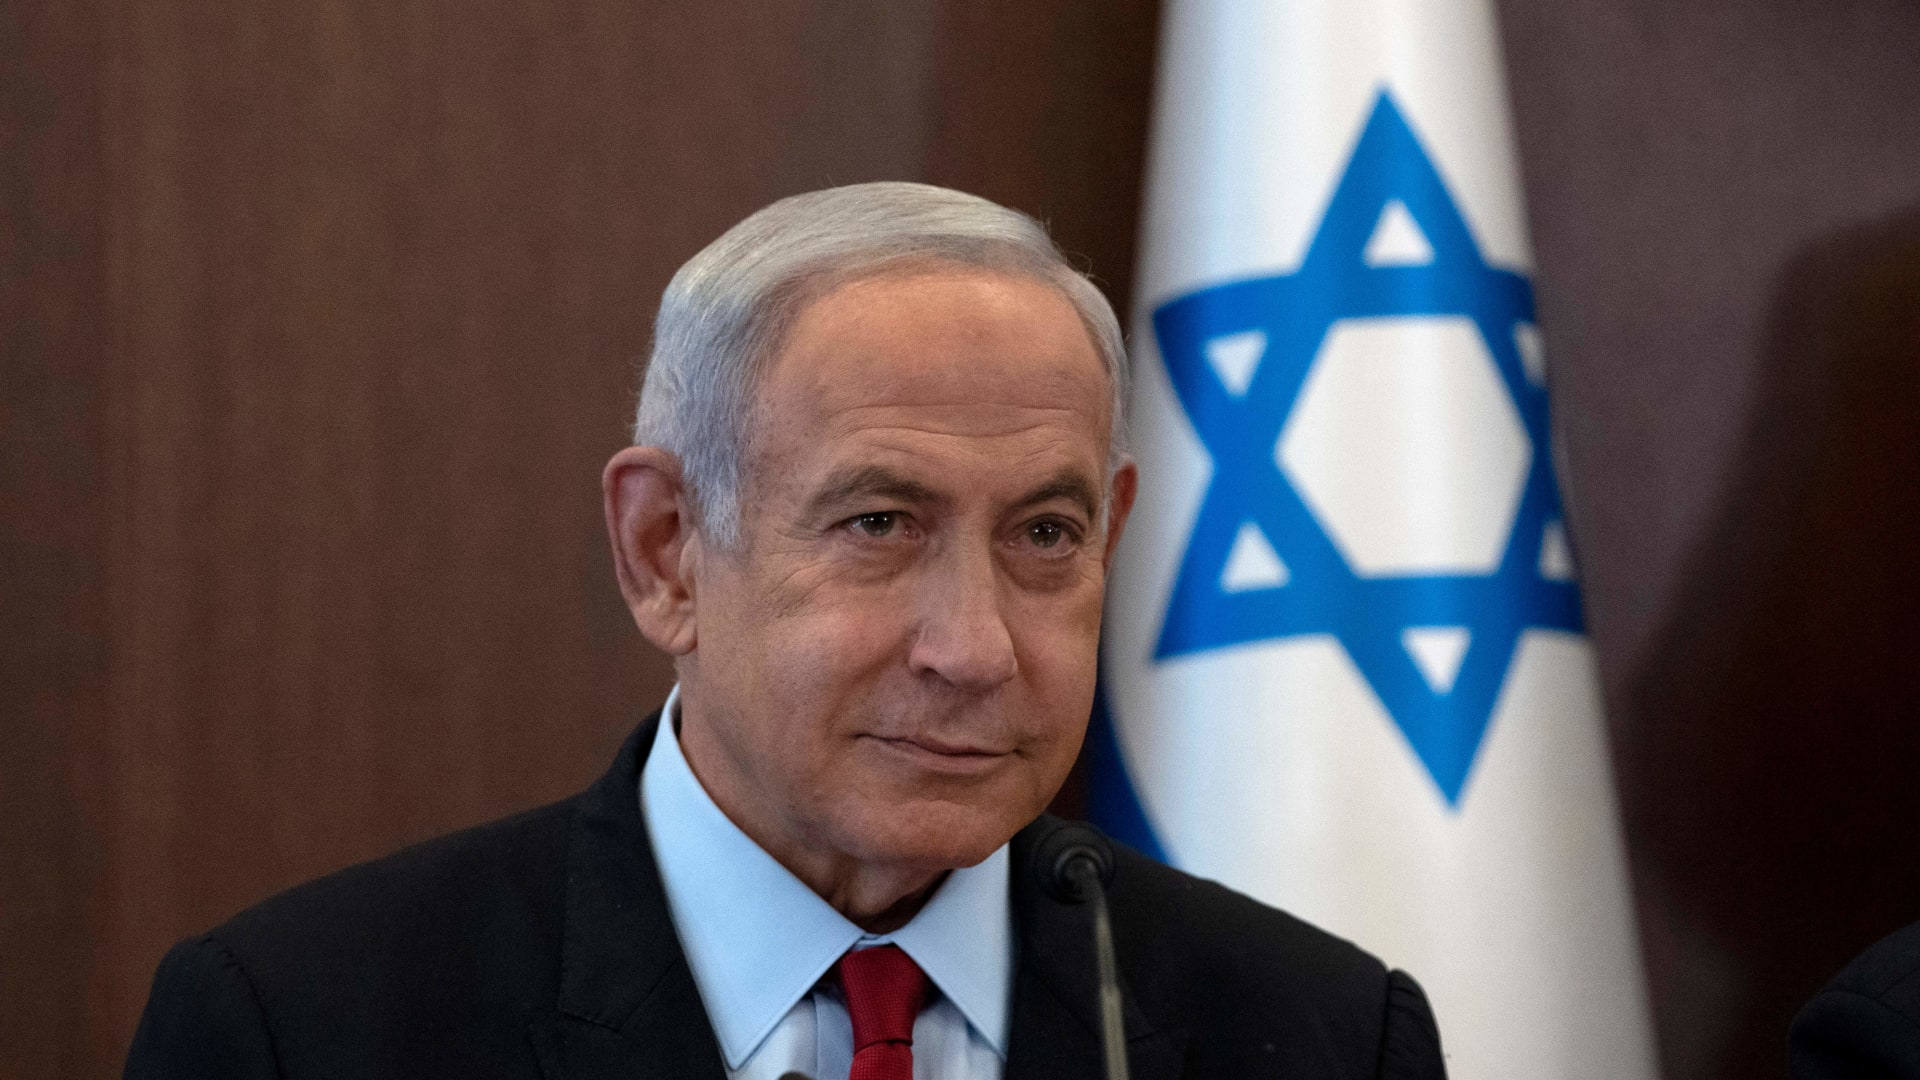 نتانياهو يتعهد بإغلاق مكتب الجزيرة في إسرائيل..والقناة تعتبره قرارا "لإسكاتها"